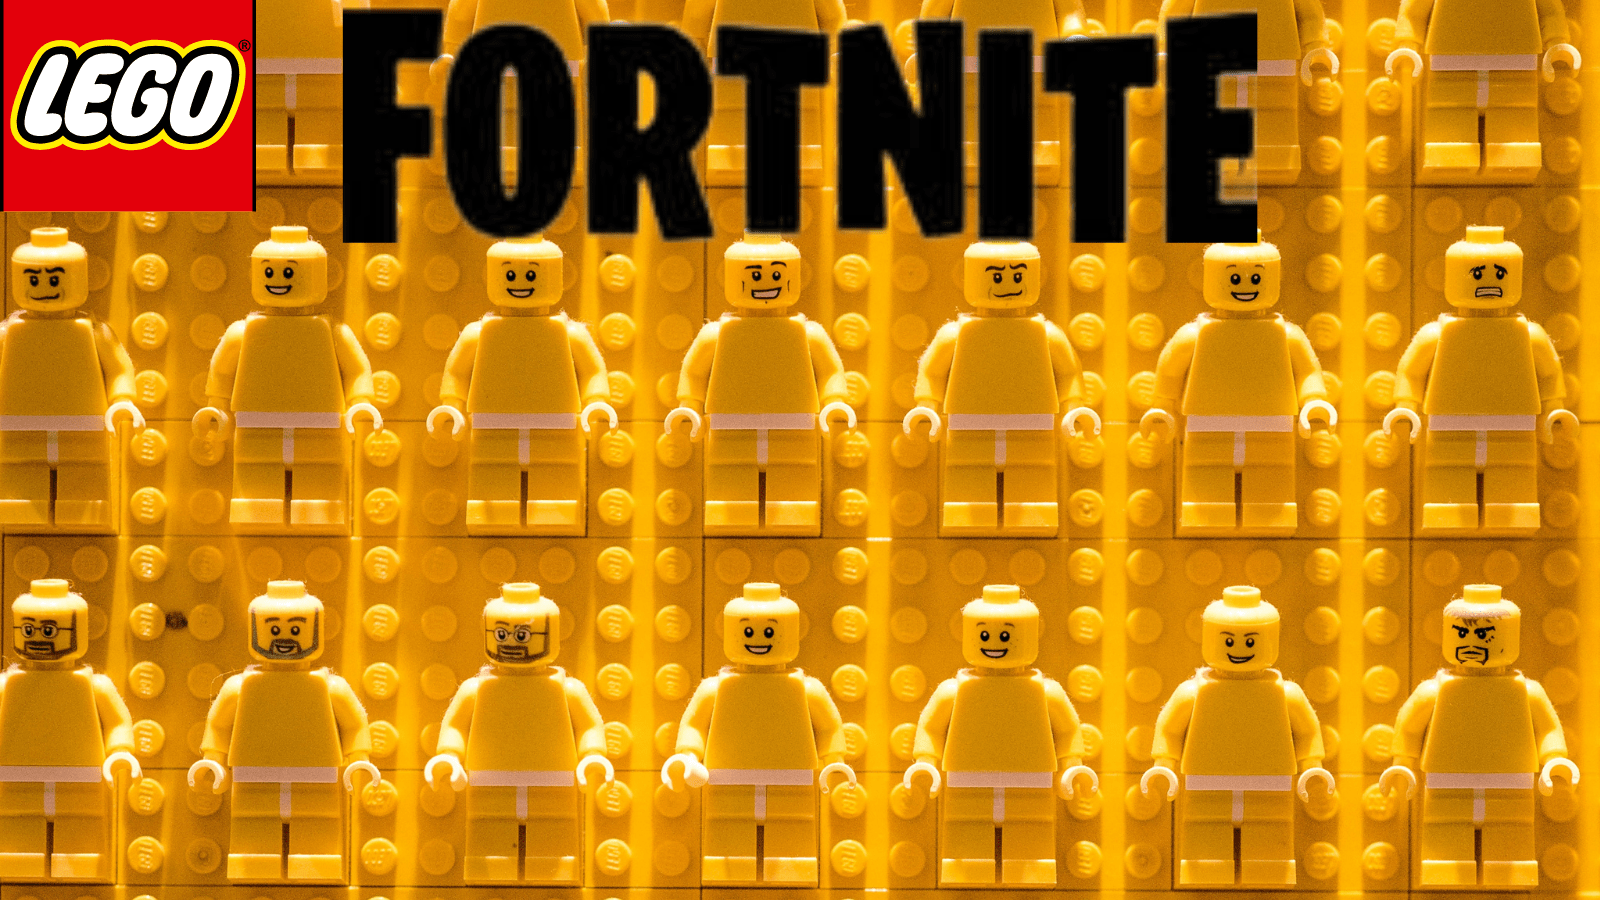 
Heyecan LEGO Fortnite ile Dorukta
